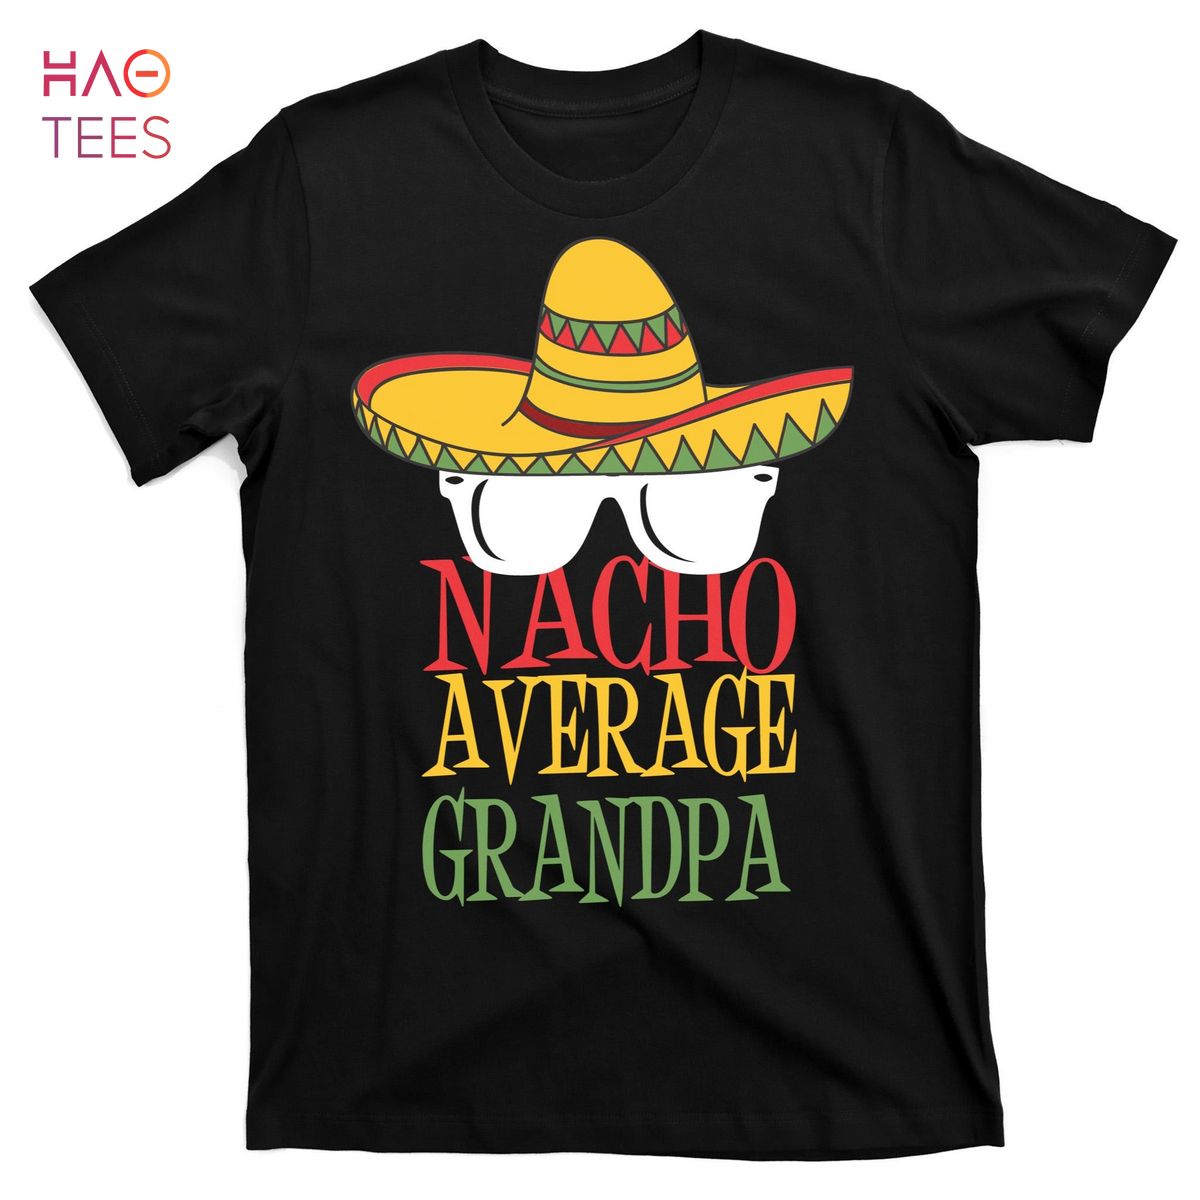 HOT Nacho Average Grandpa T-Shirts